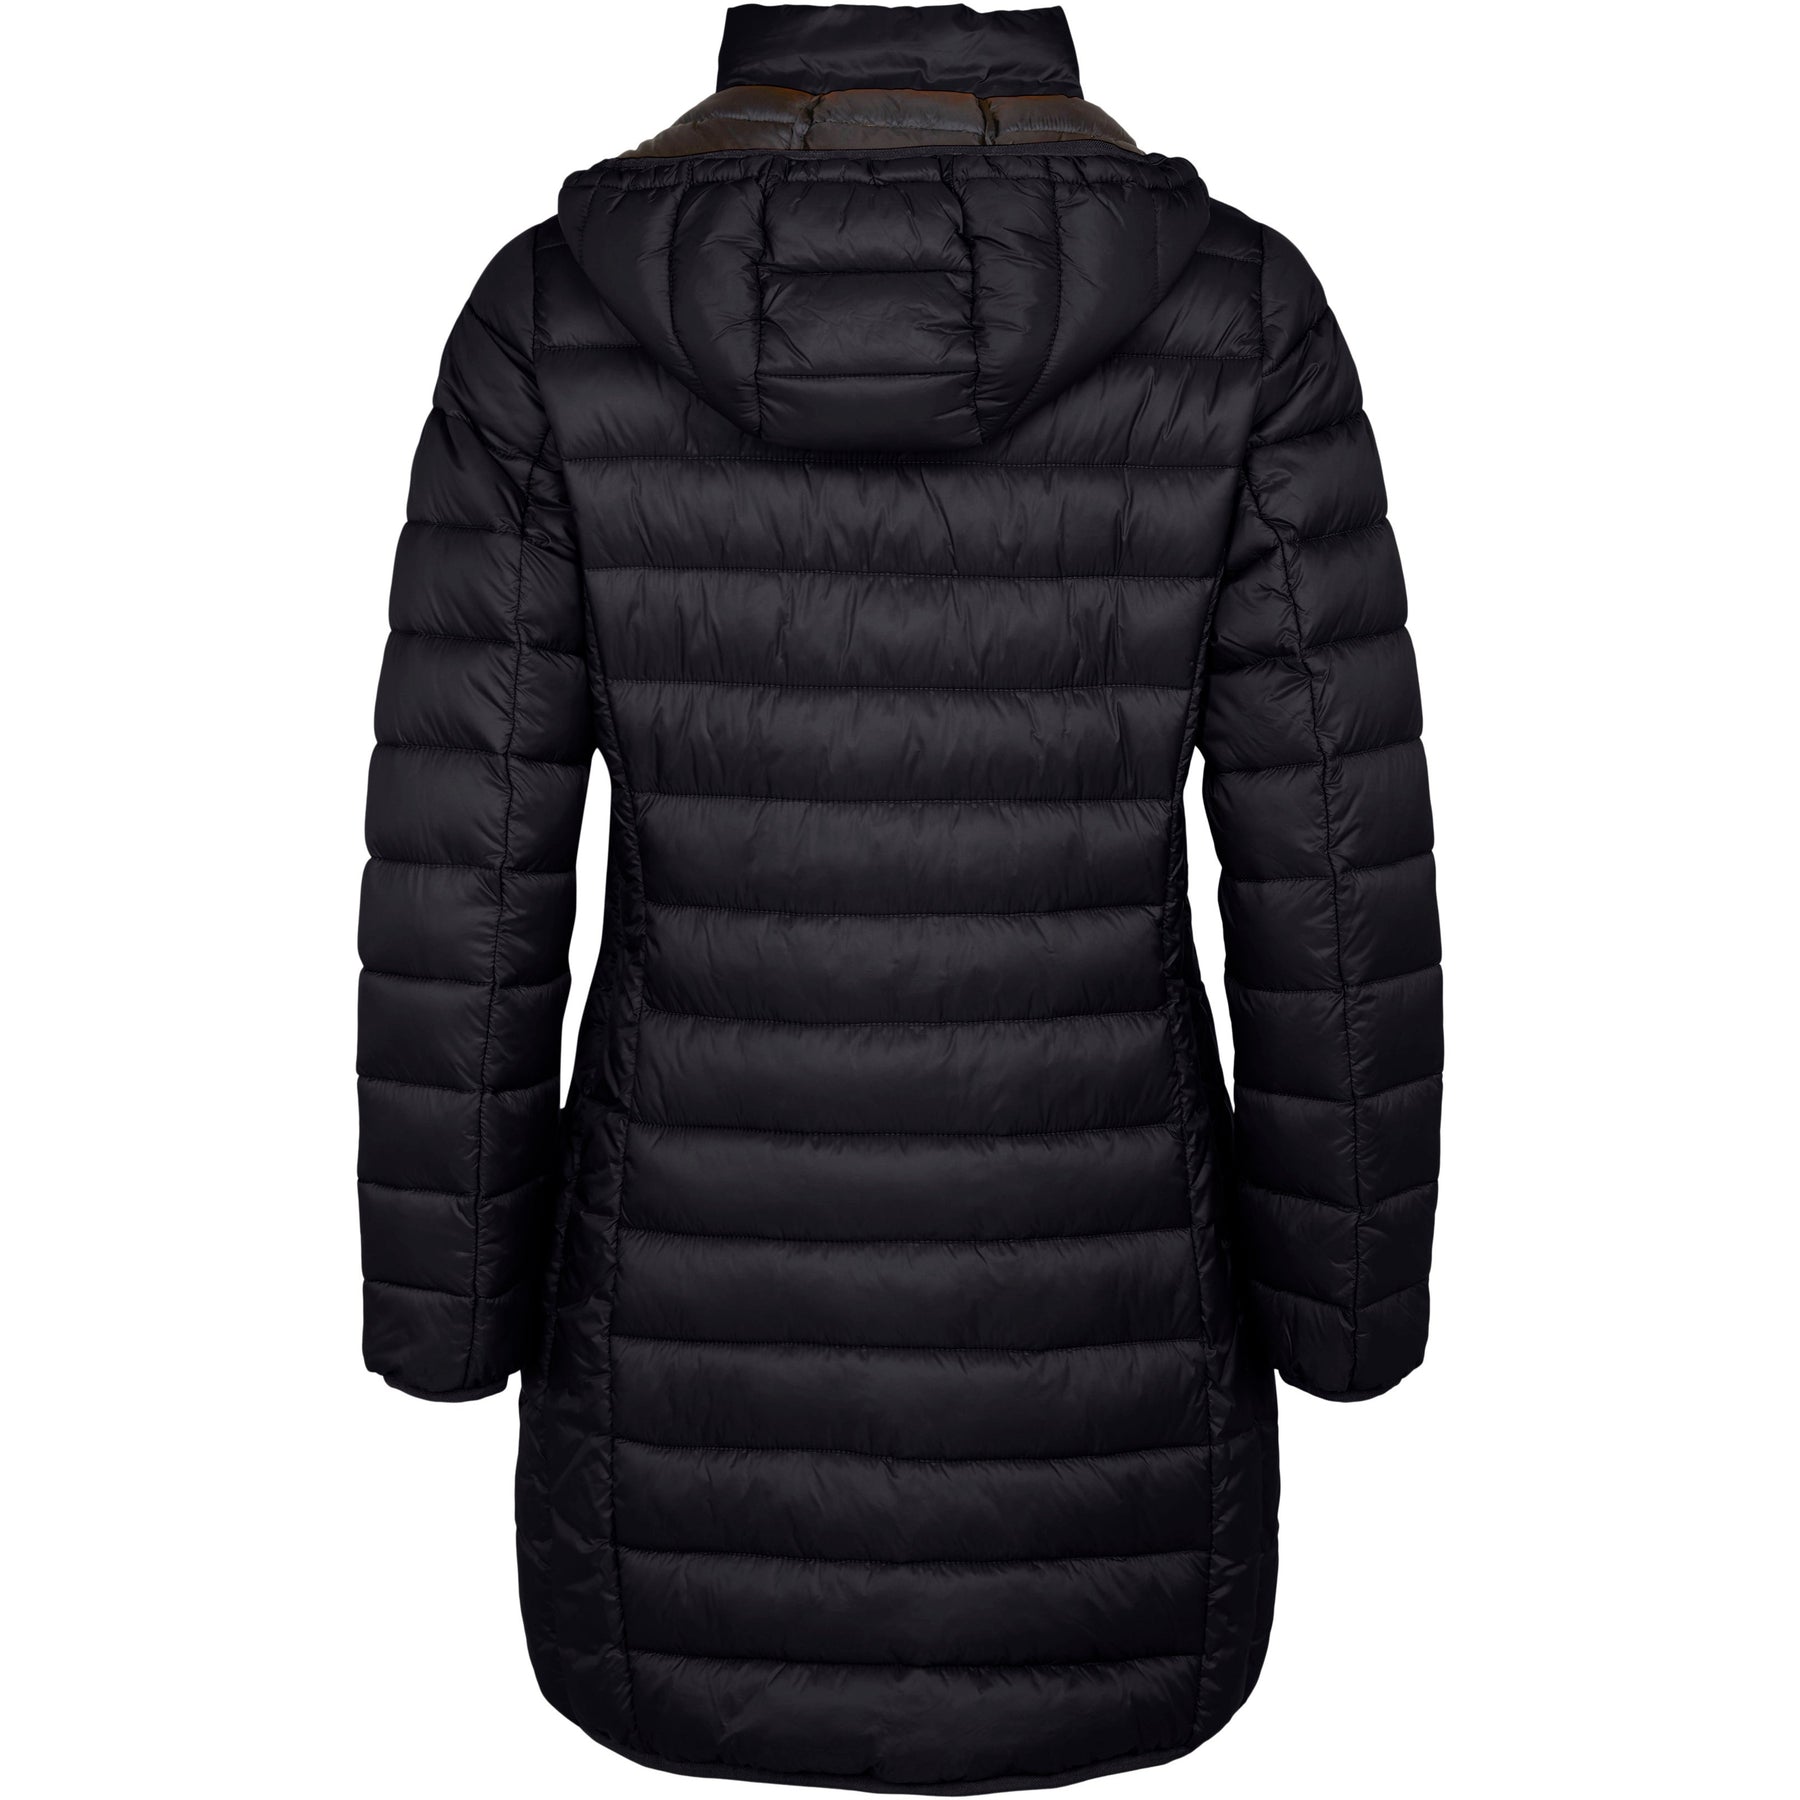 Frandsen Padded Coat with Hood in Black - Wardrobe Plus